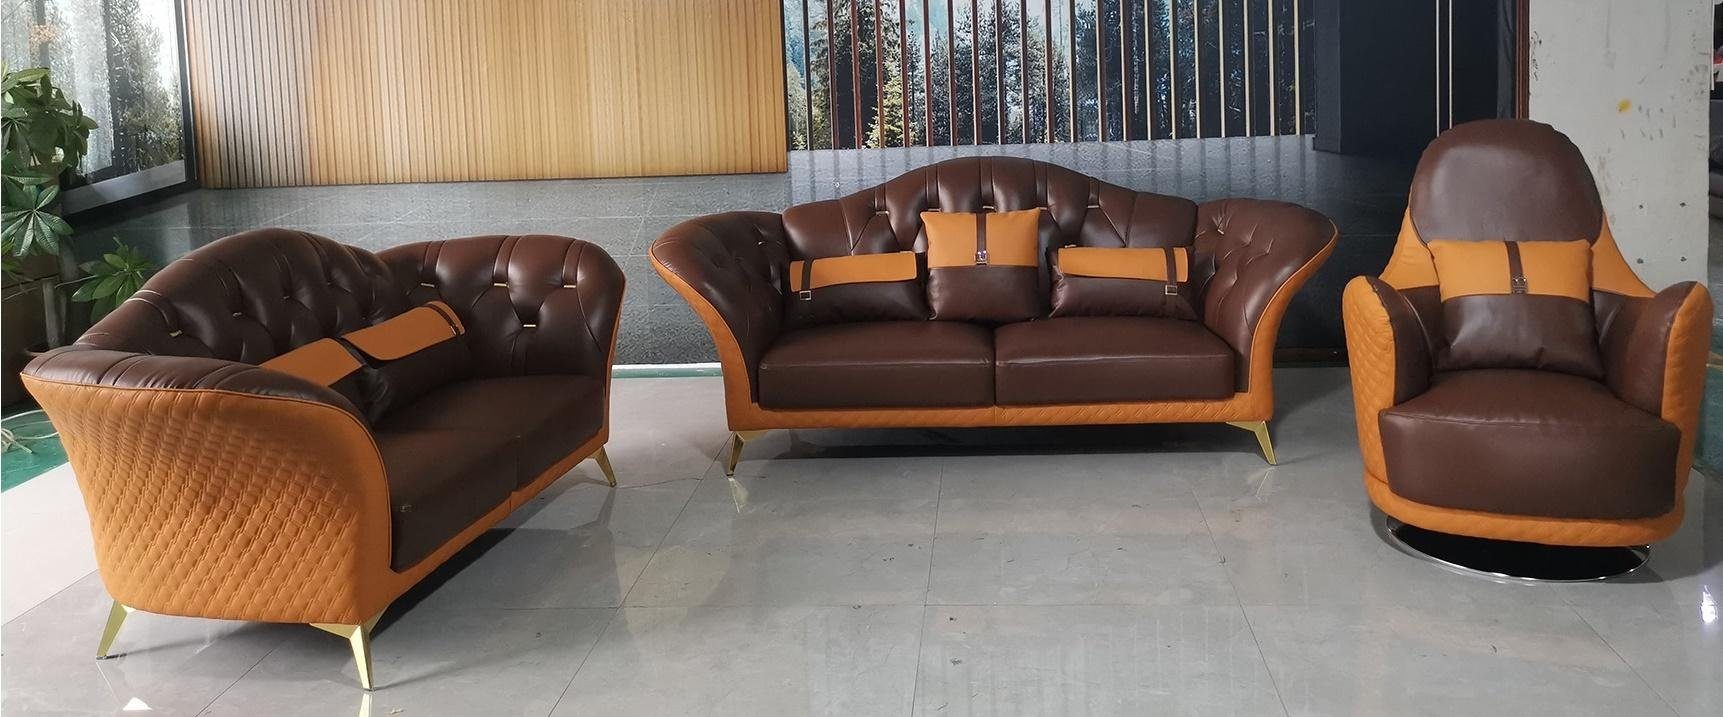 JVmoebel Sofa Stilvolle Couchgarnitur 3+2+1 Sitzer Wohnlandschaft Neu, Made in Europe